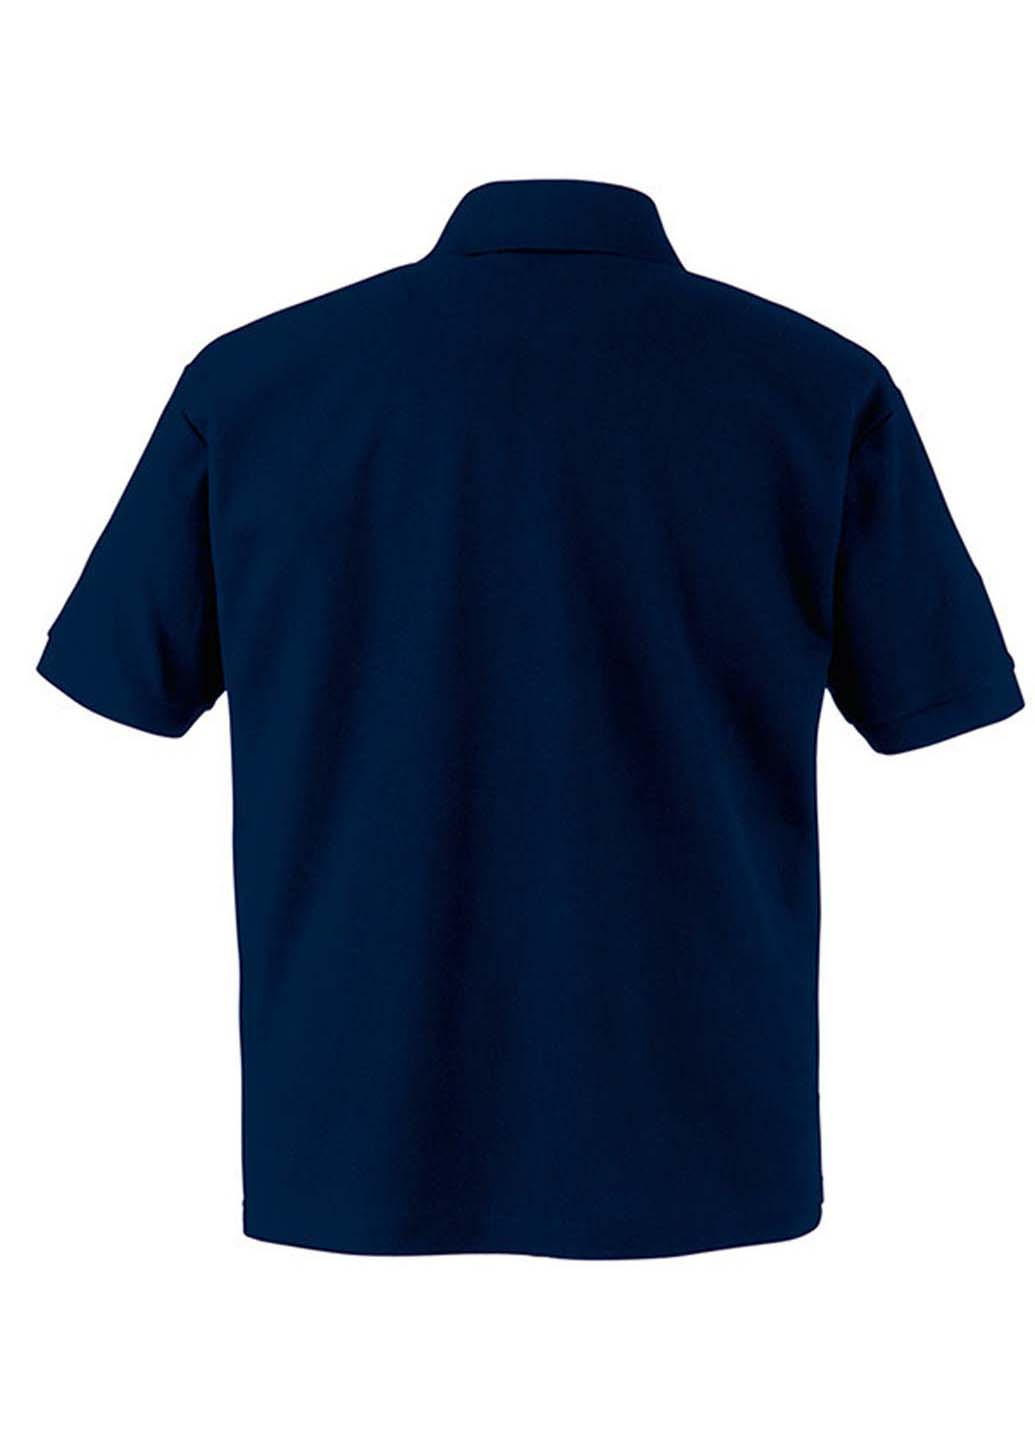 Темно-синяя детская футболка-поло для мальчика Fruit of the Loom